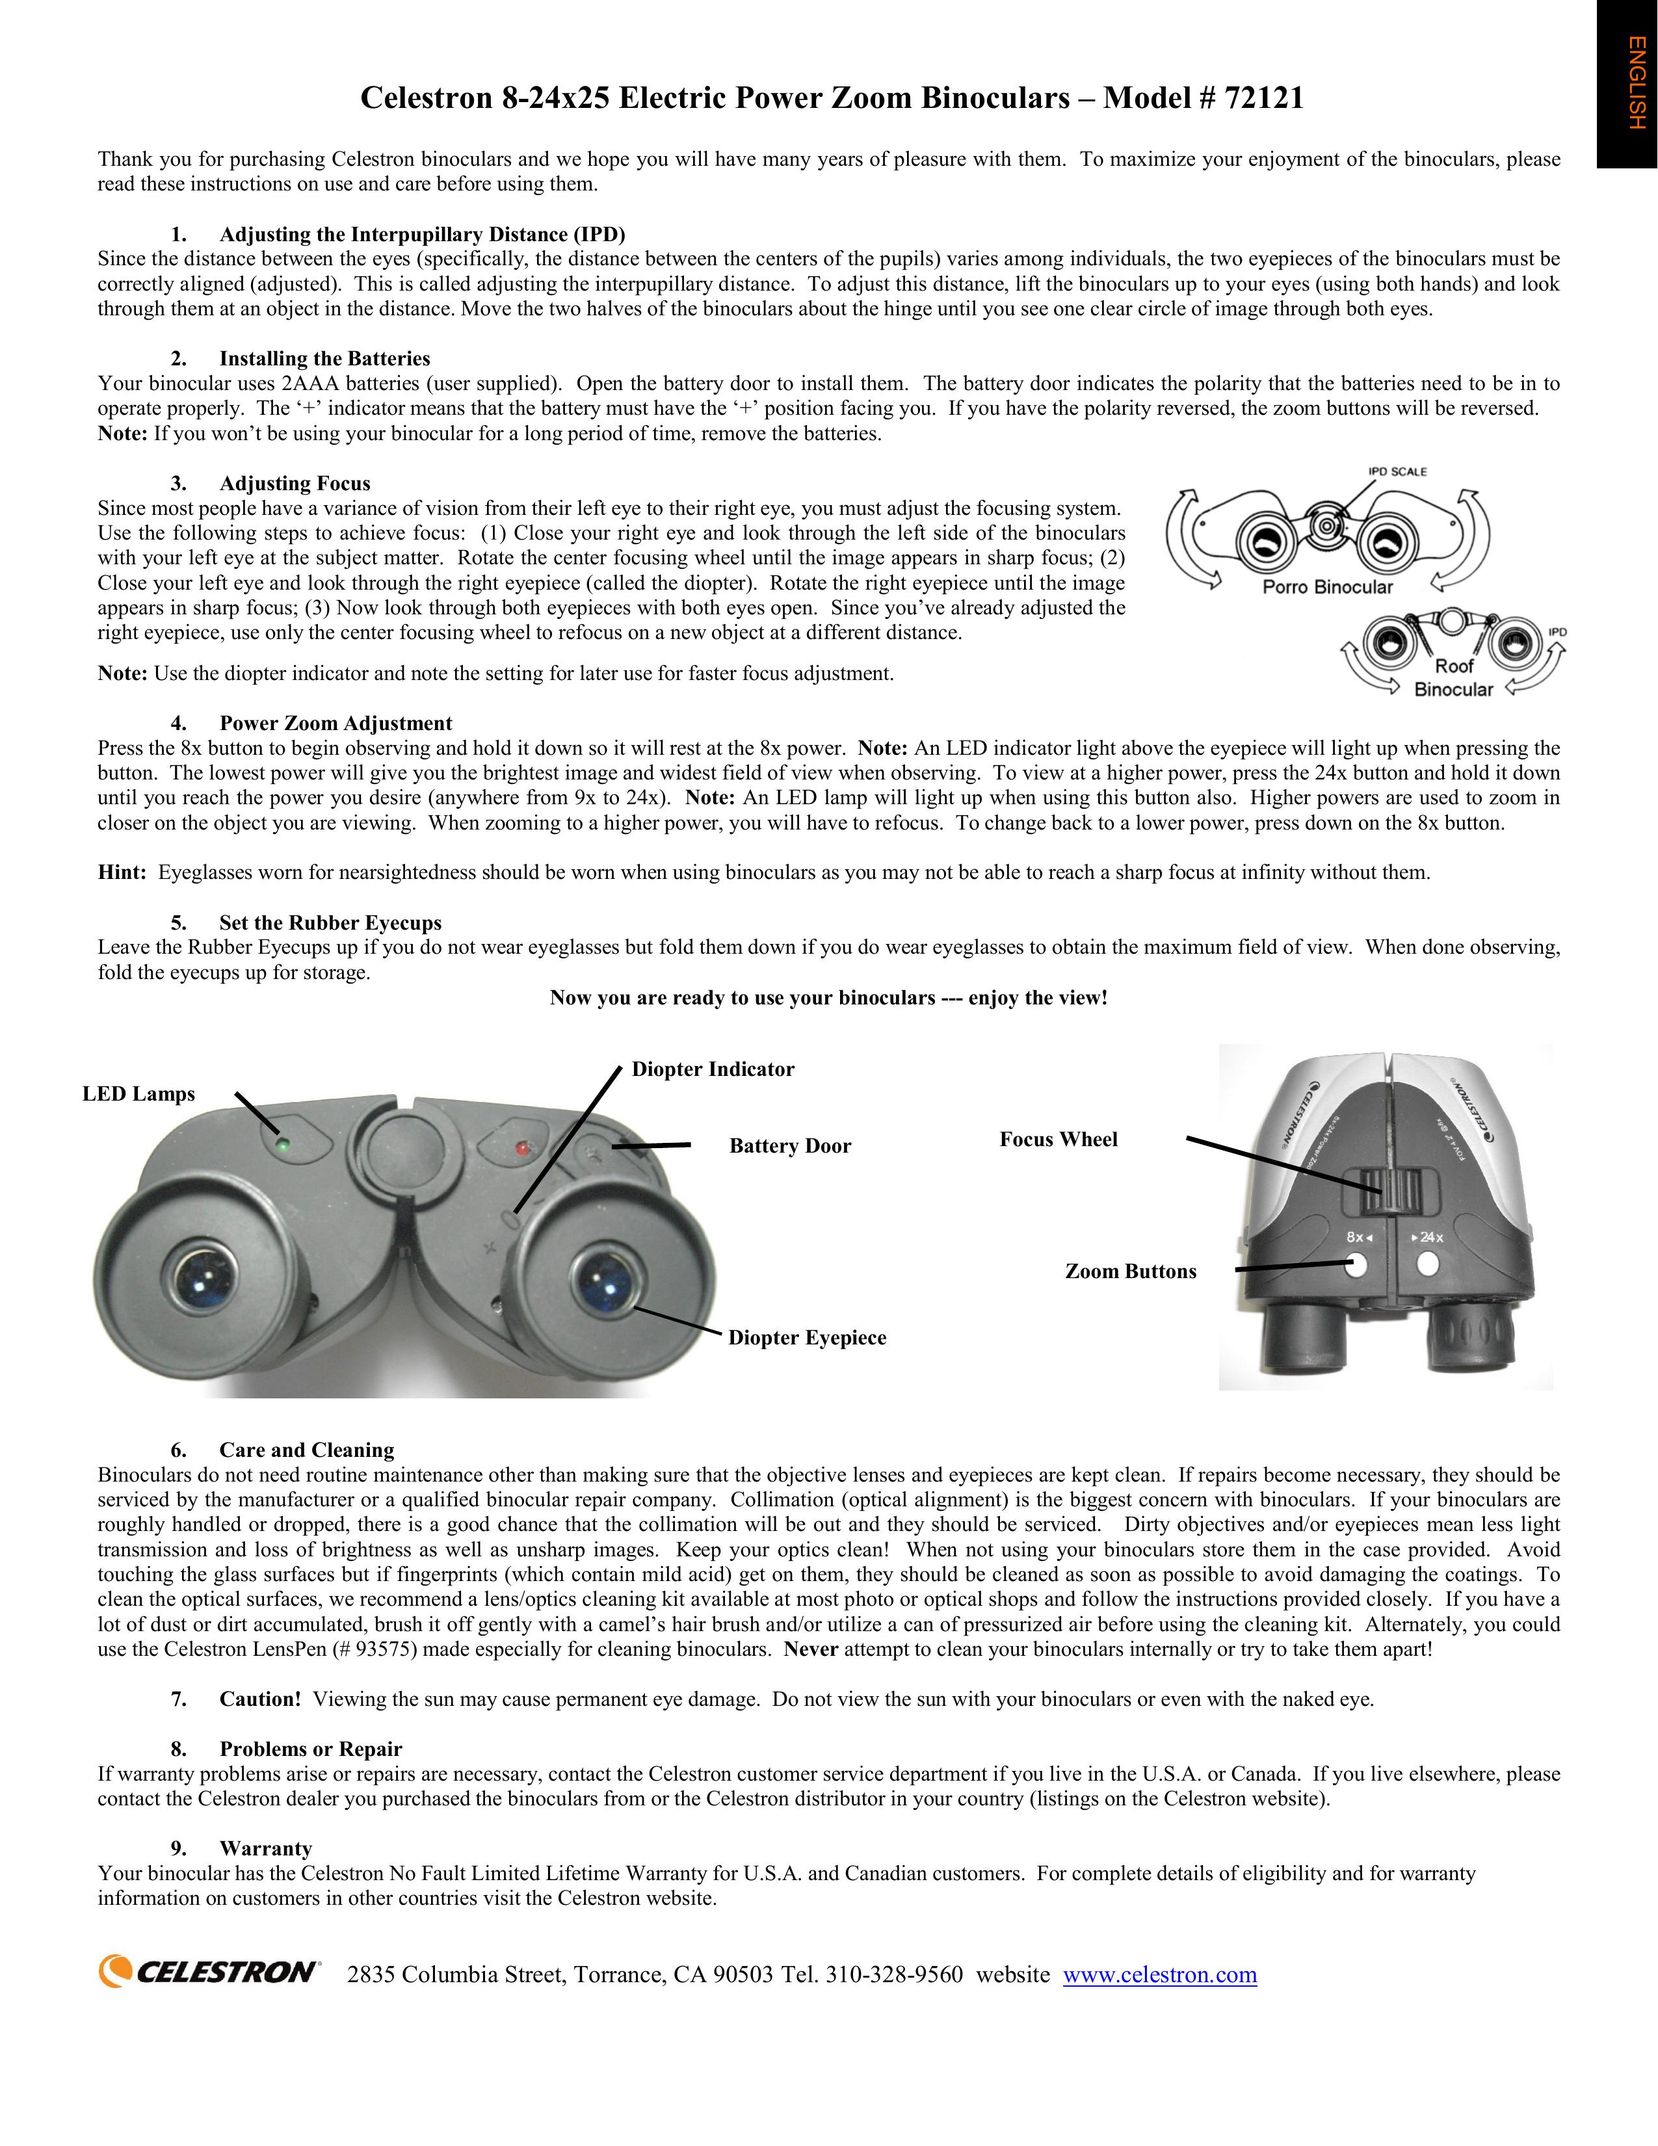 Celestron 72121 Binoculars User Manual